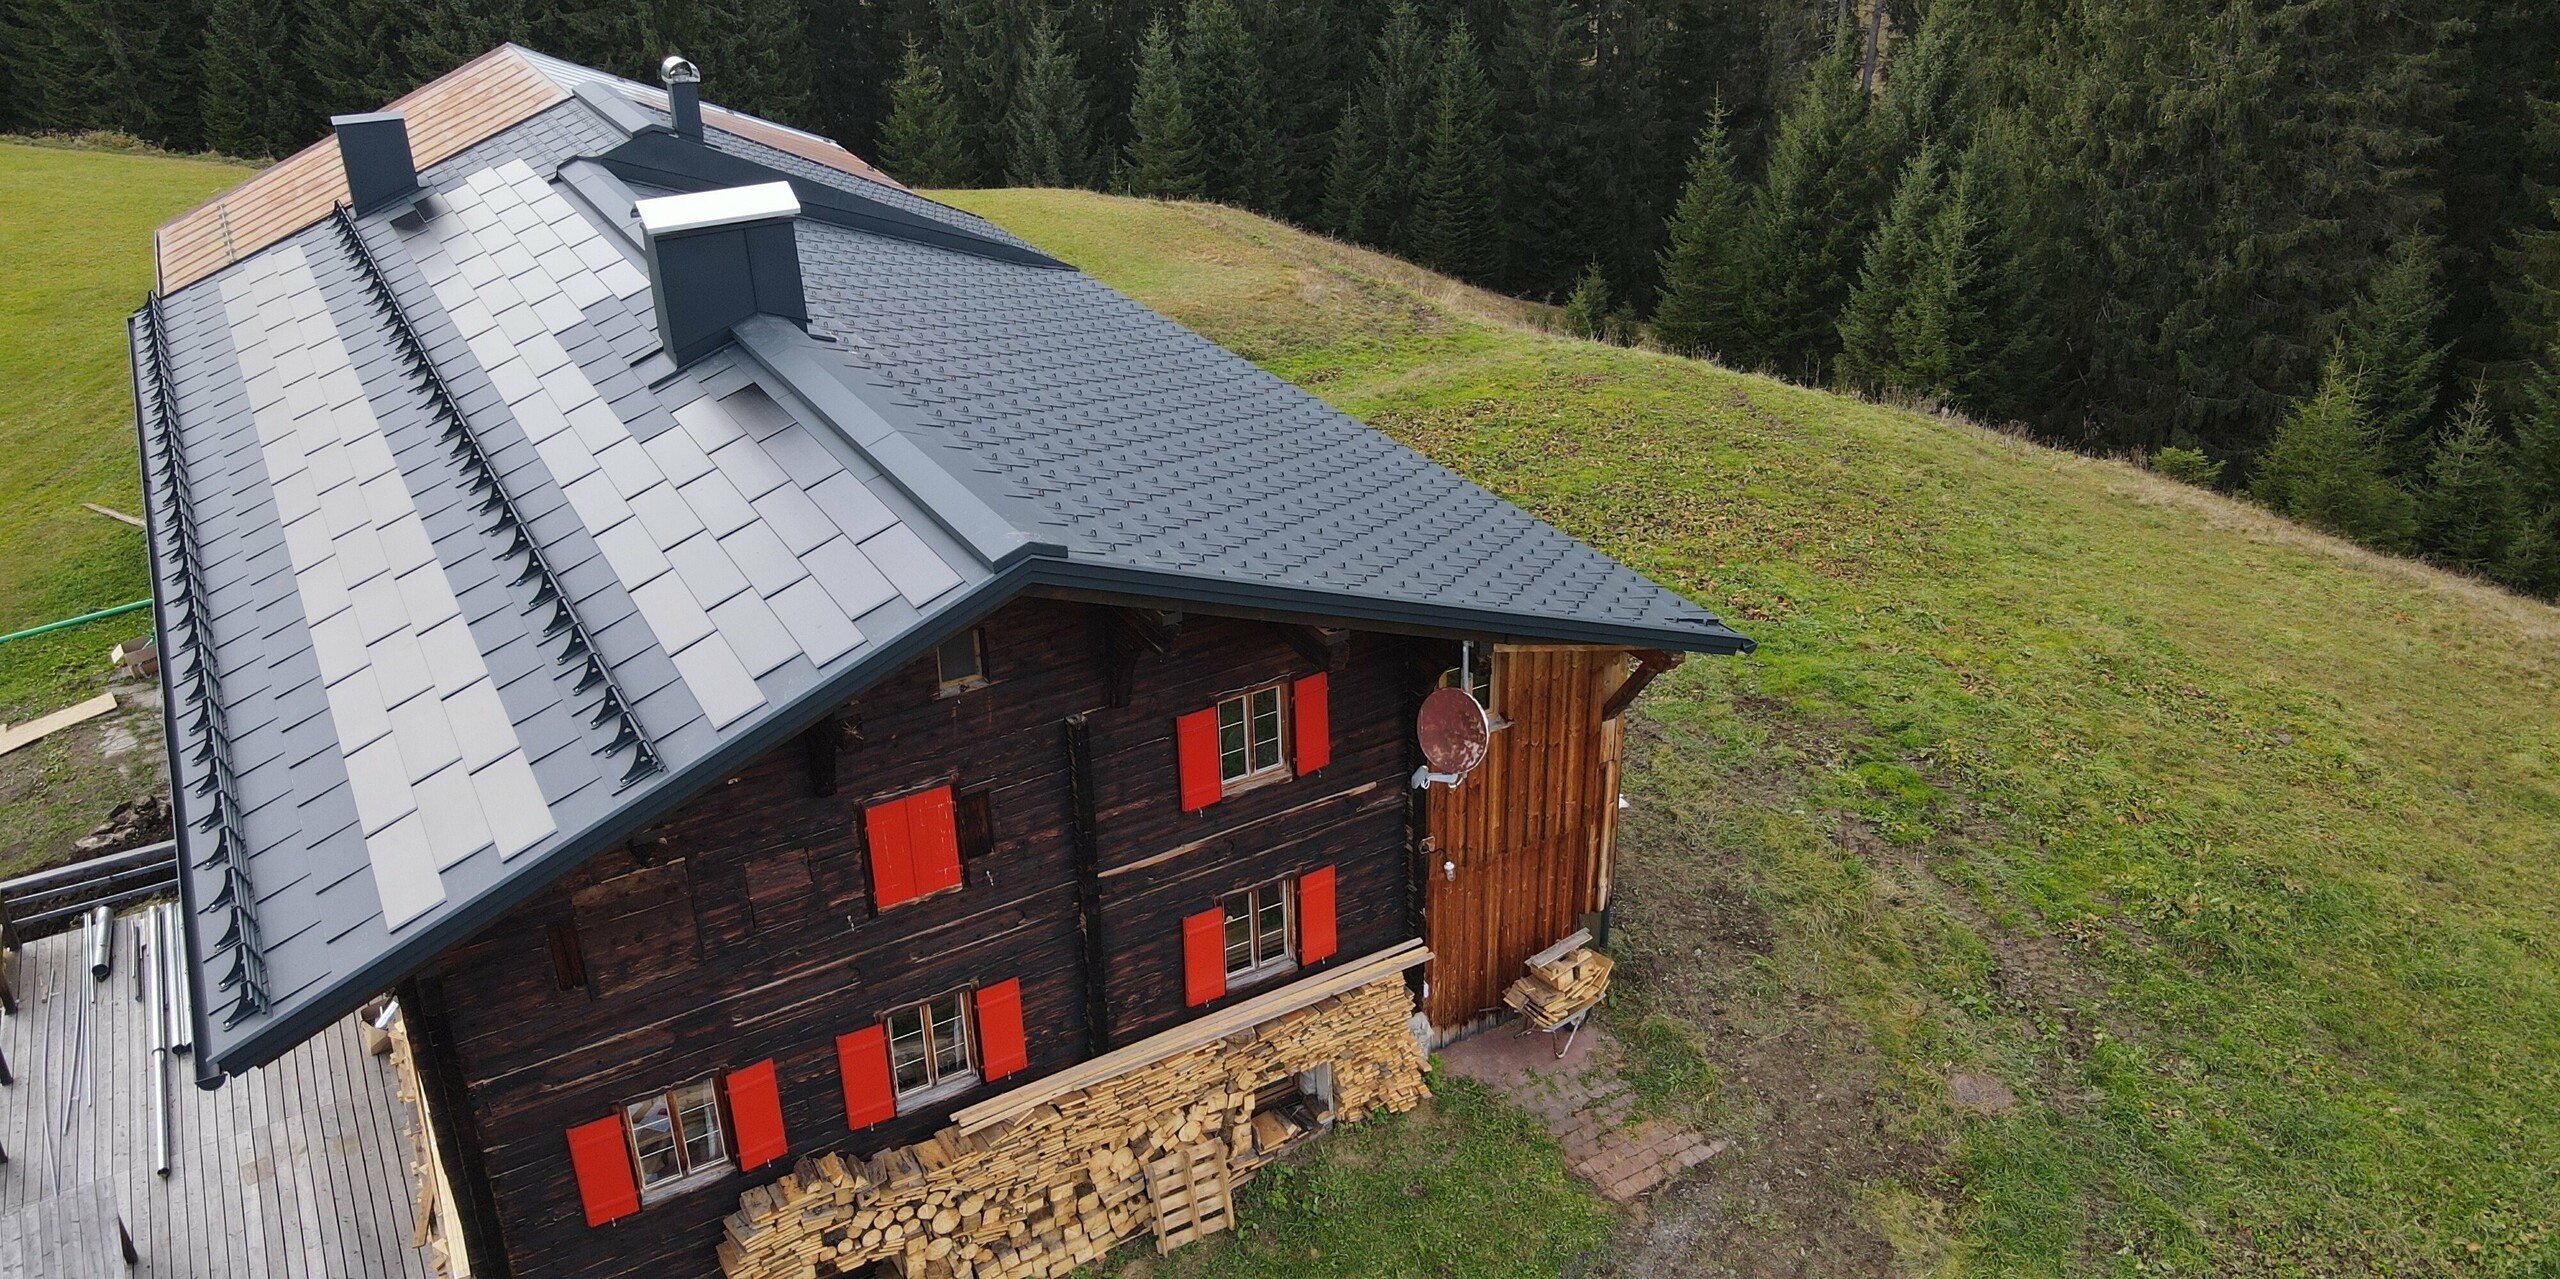 PREFA Solardachplatte in P.10 Anthrazit auf dem Alten Walserhaus in Warth, Vorarlberg